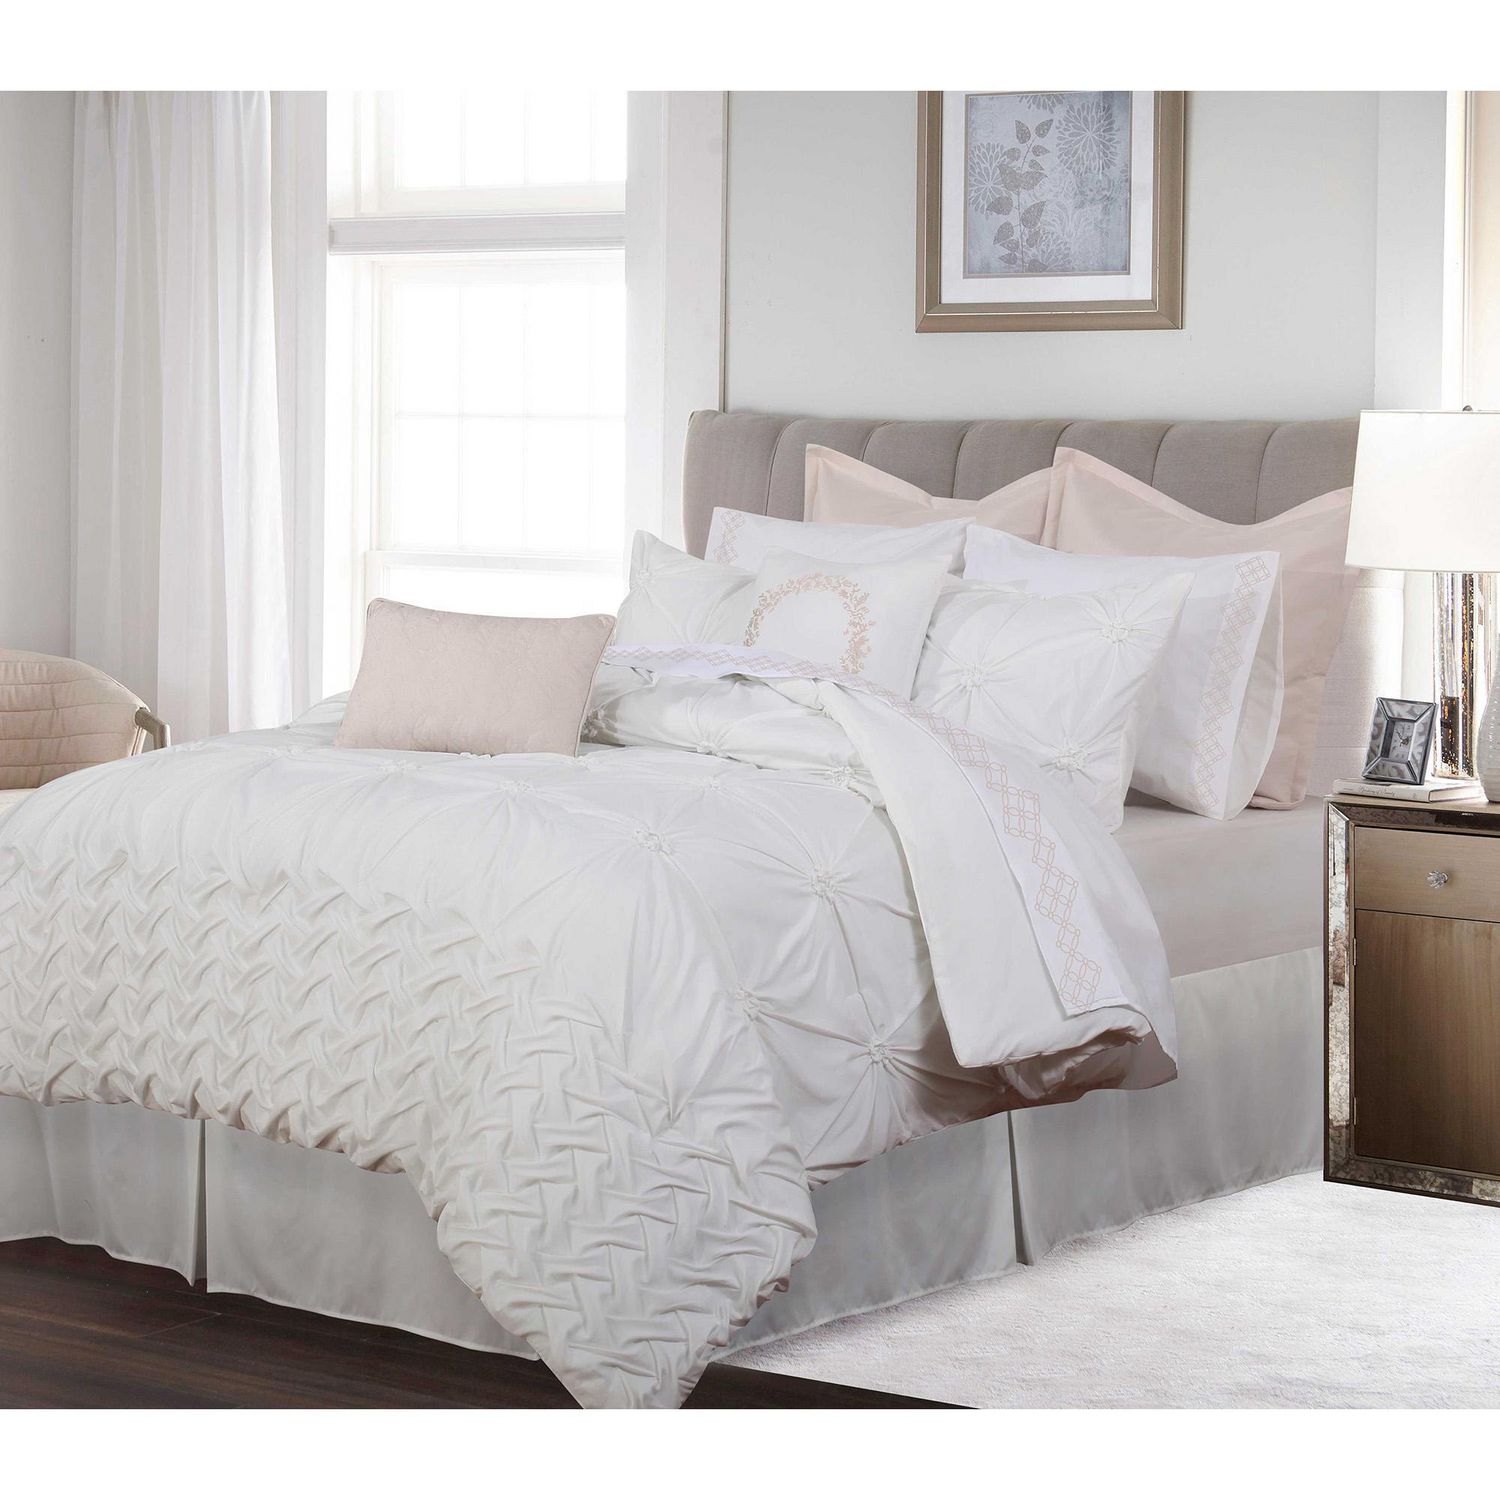 Mainstays Grey Reversible Comforter Double/Queen, comforter